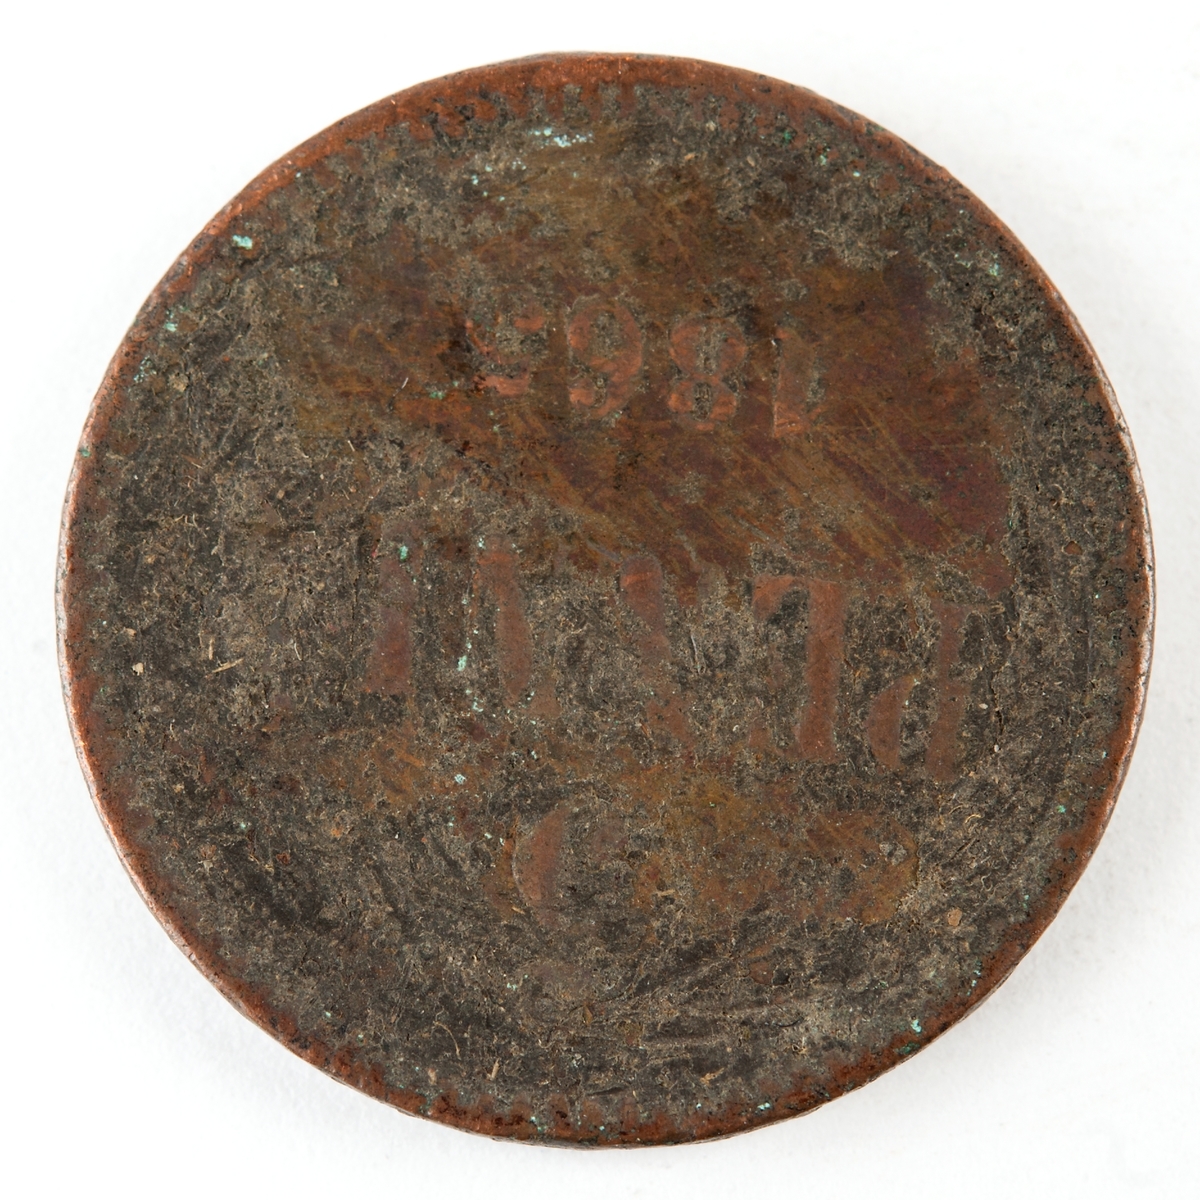 Finskt 10-penniämynt präglat 1865